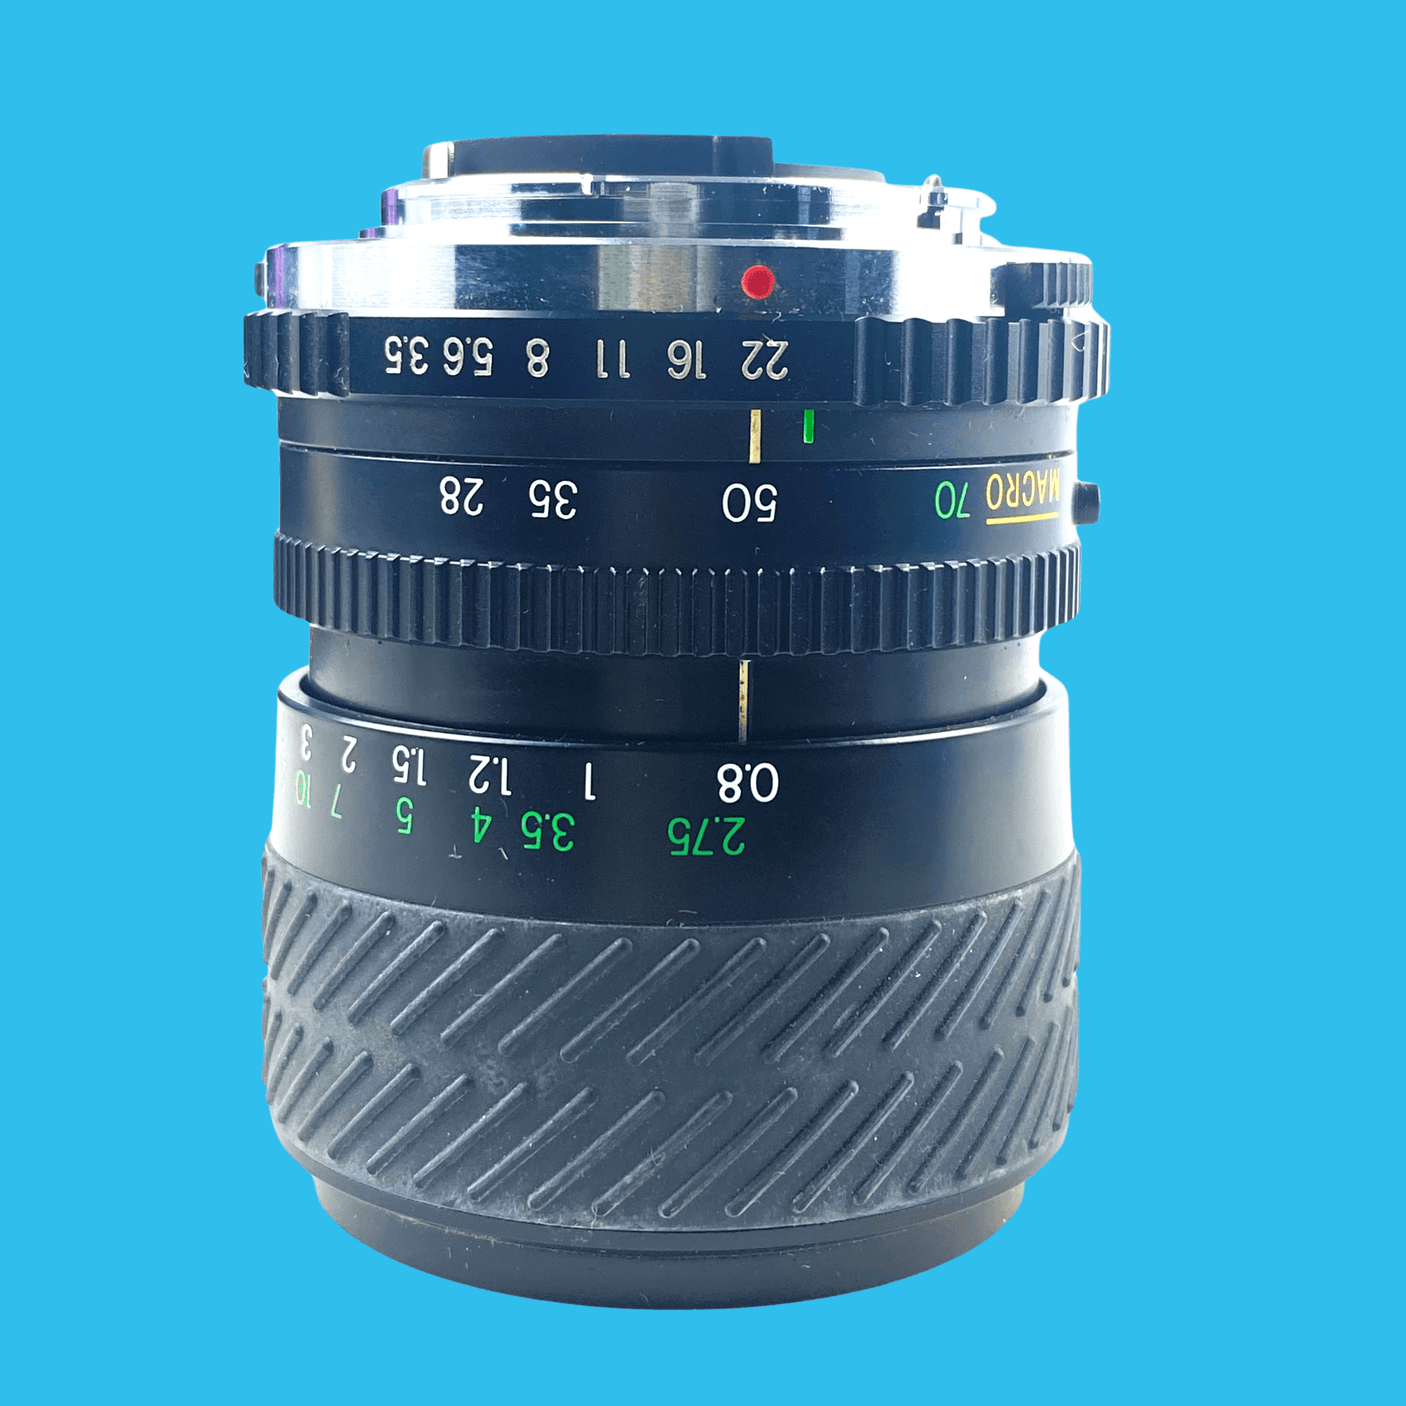 Miranda Macro 28-70mm F3.5 Lens.